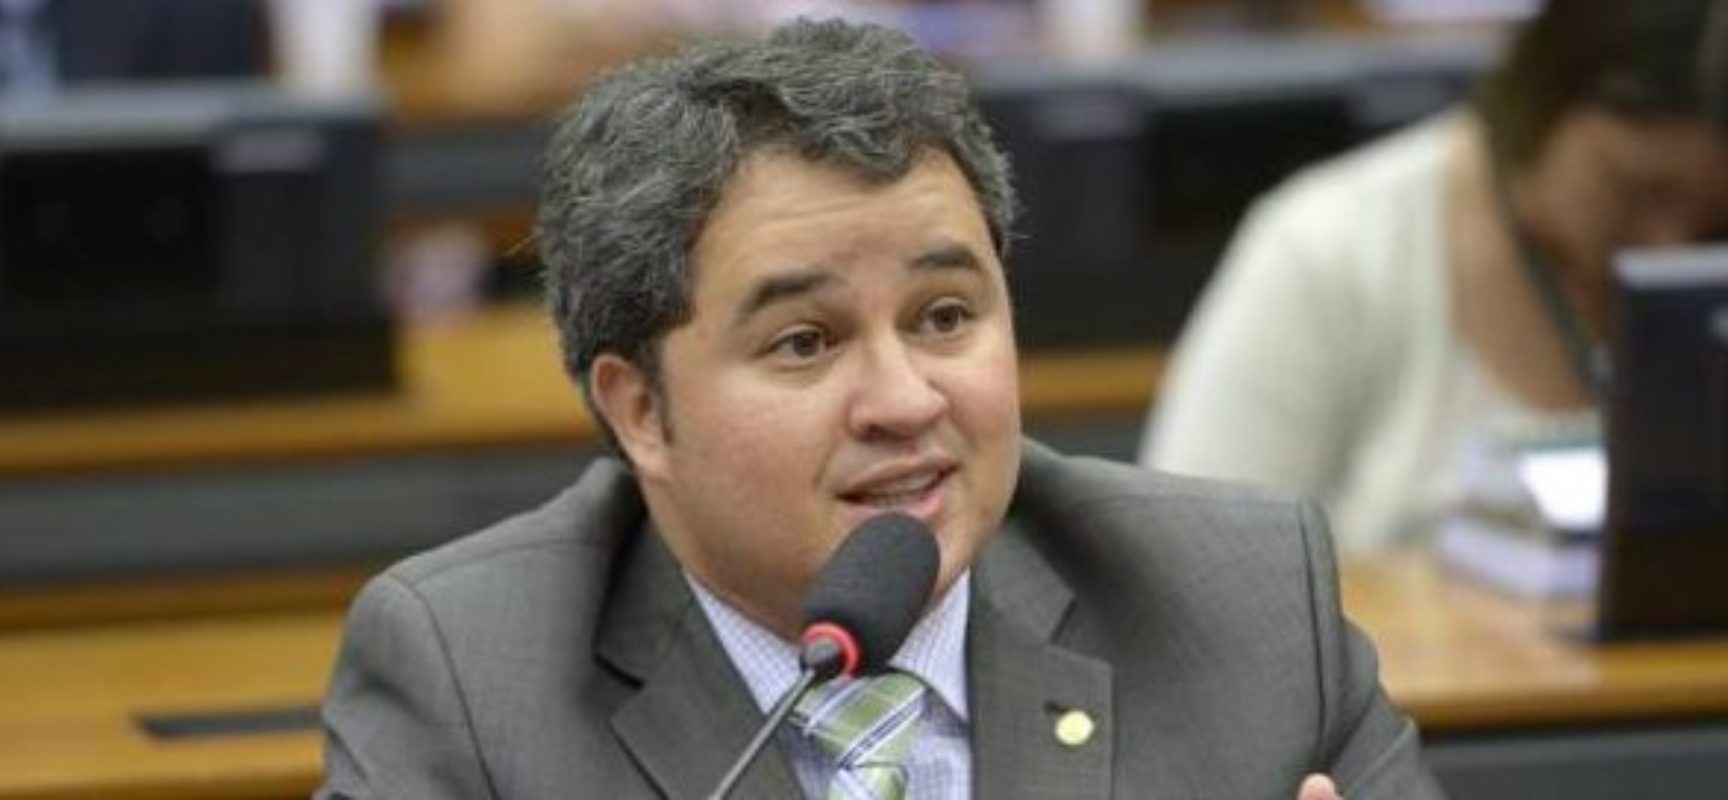 Maioria da bancada do DEM não descarta apoio à reeleição de Bolsonaro